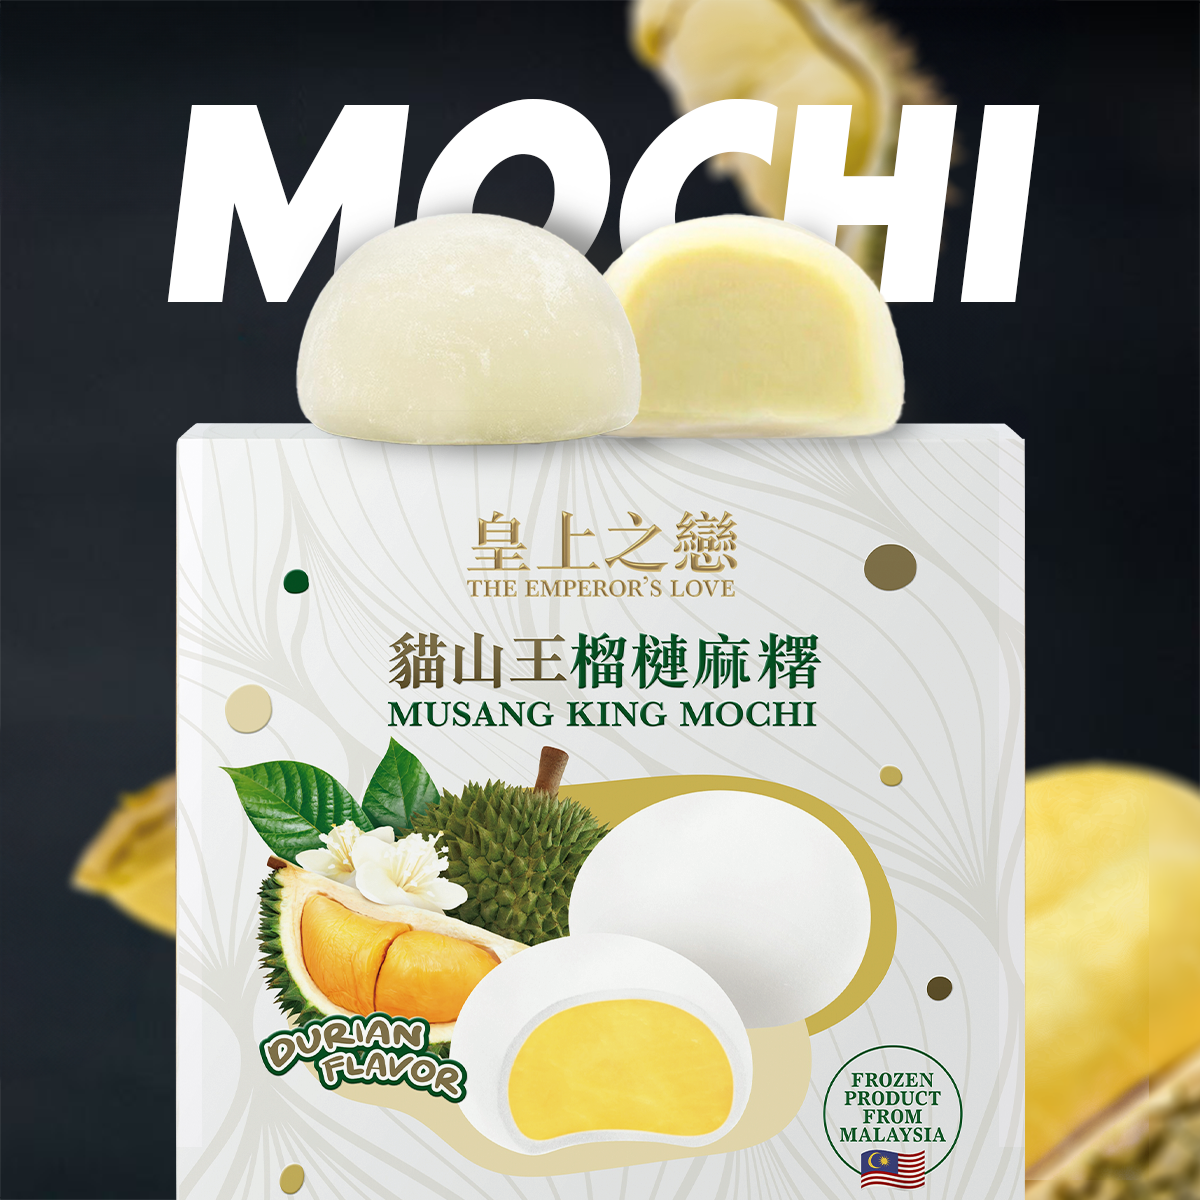 （1盒裝）馬來西亞D197貓山王榴槤麻糬 Mochi 4粒裝（急凍）[到期日: 14/02/2025]